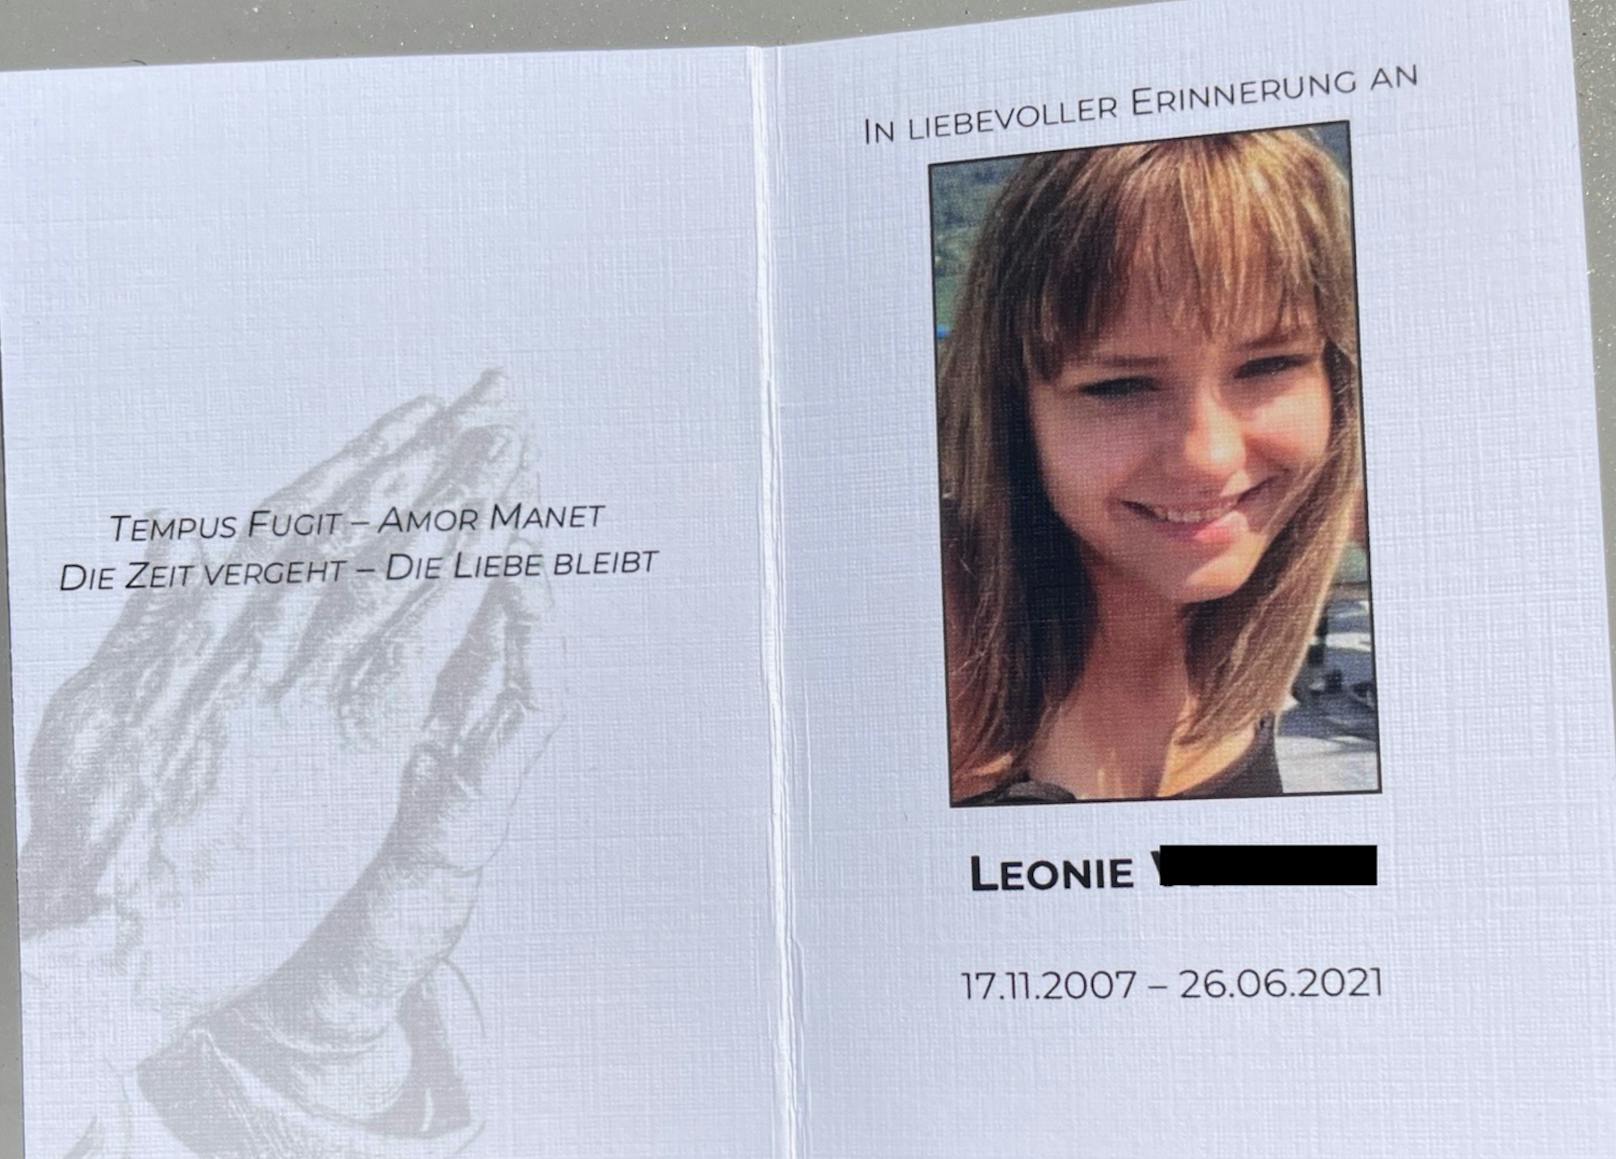 Trauerkarte bei der Bestattung von Leonie am 20. August 2021 in Wien-Simmering